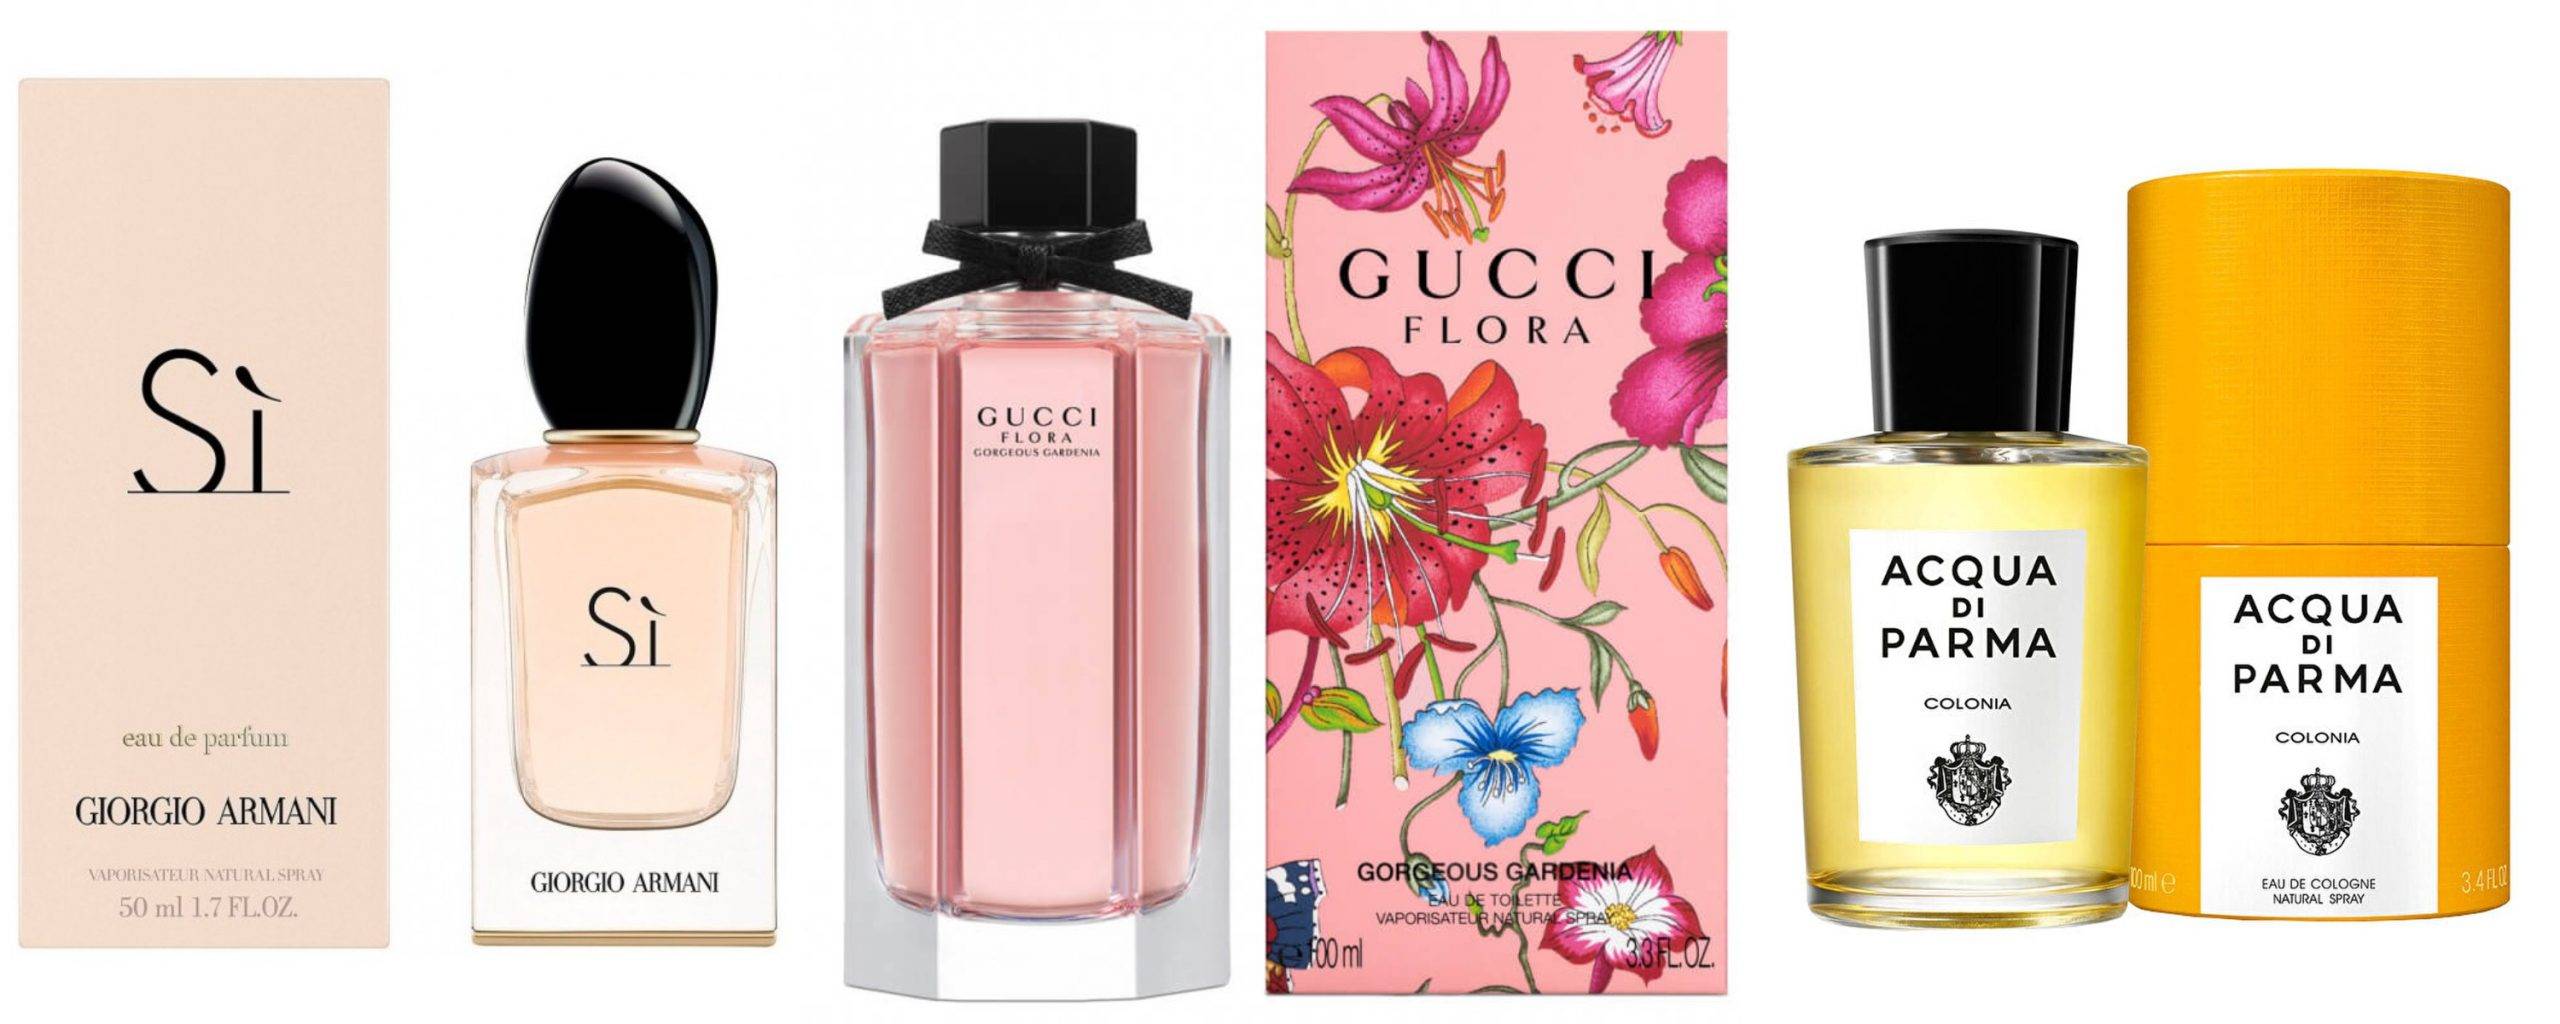 Cele mai iubite și apreciate 3 brand-uri italiene care au creat o mulțime de parfumuri de lux